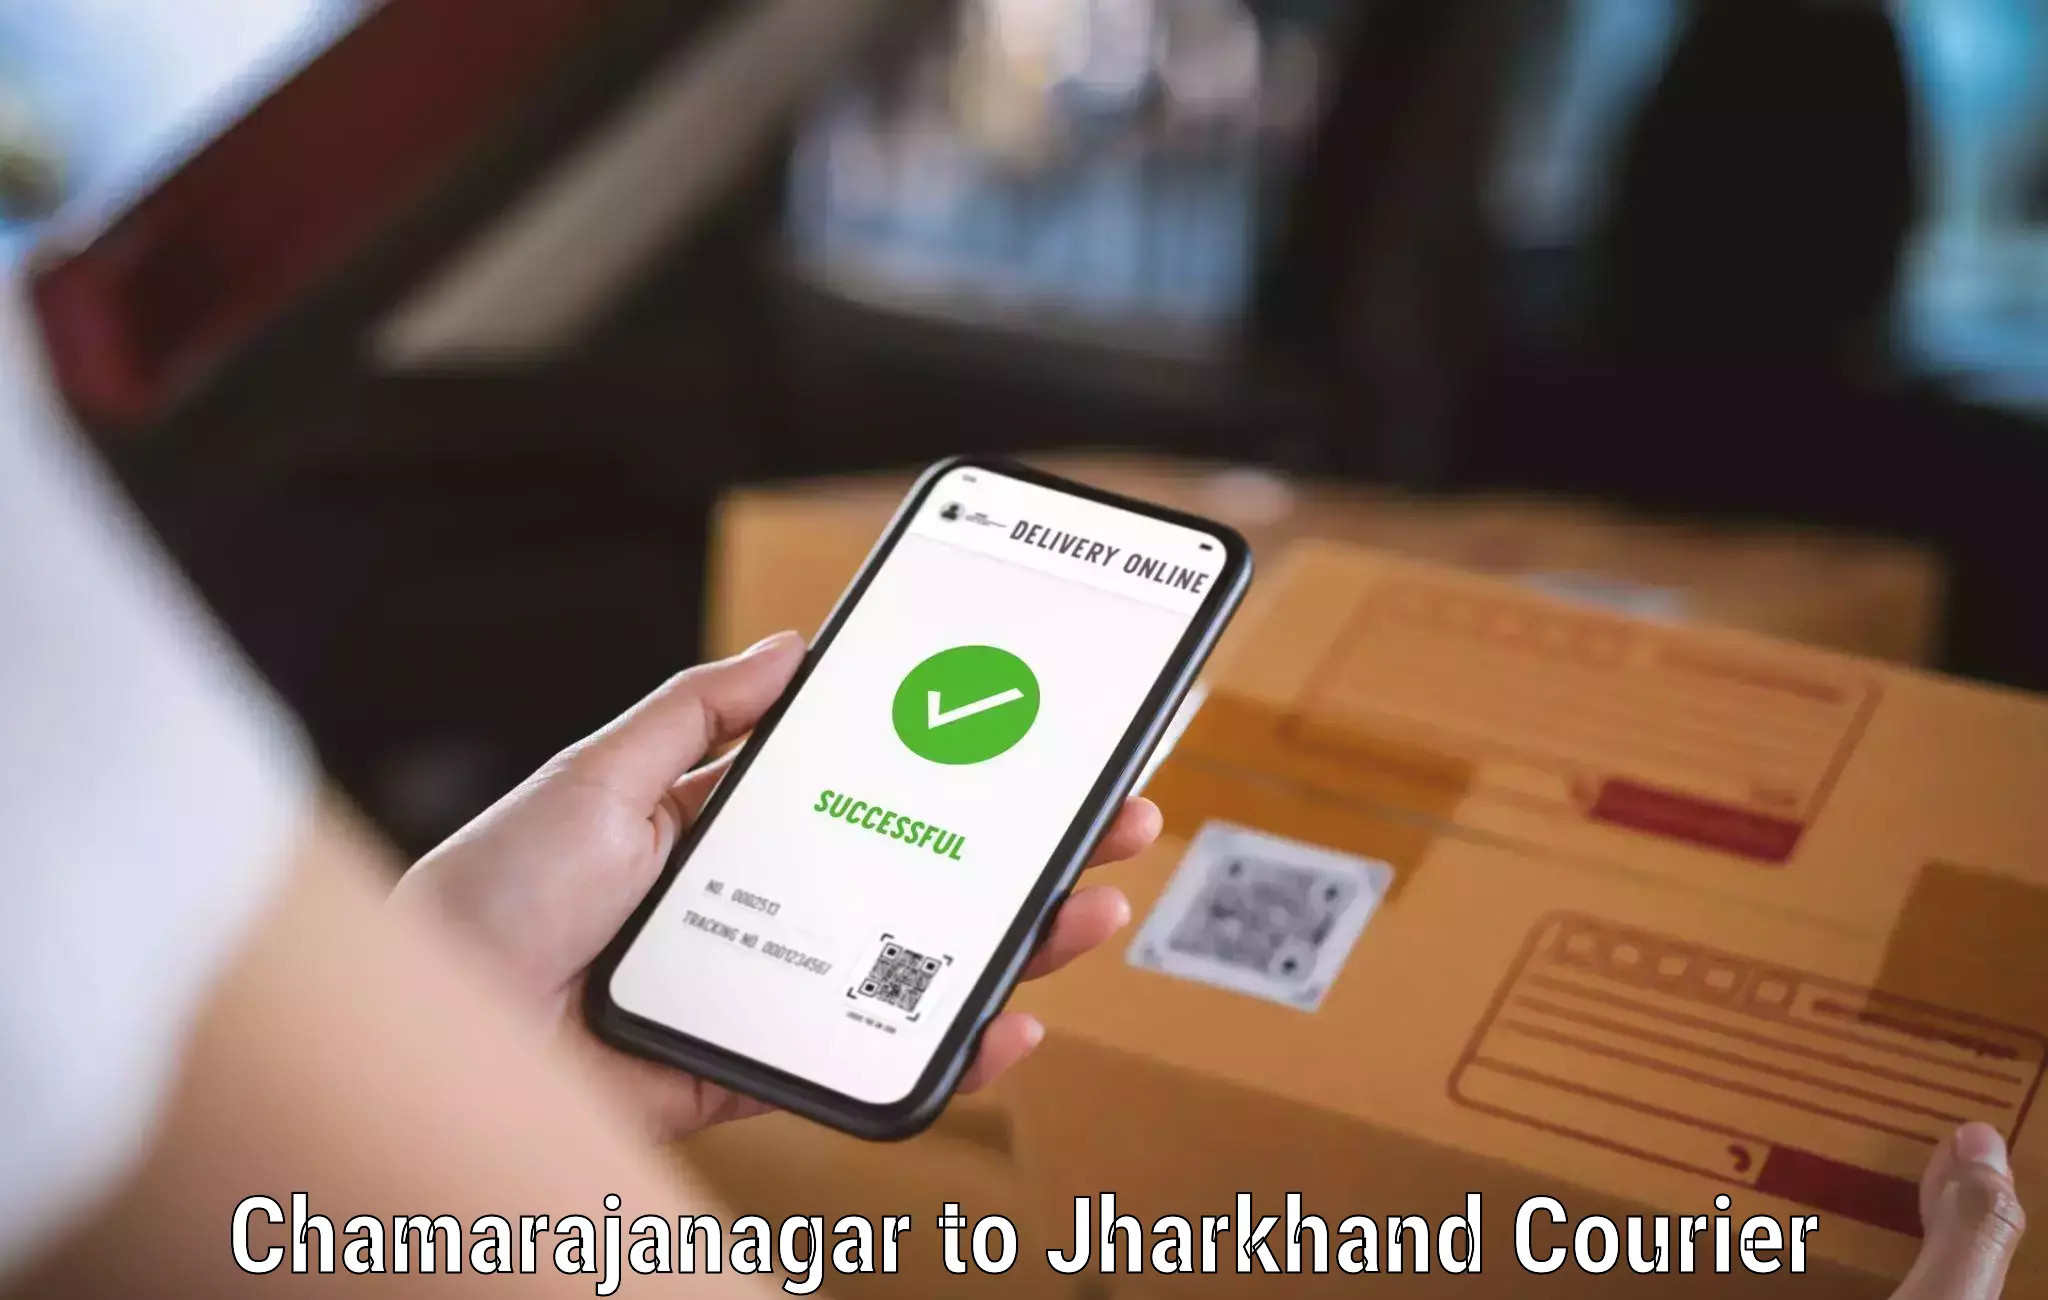 User-friendly delivery service Chamarajanagar to Mahagama